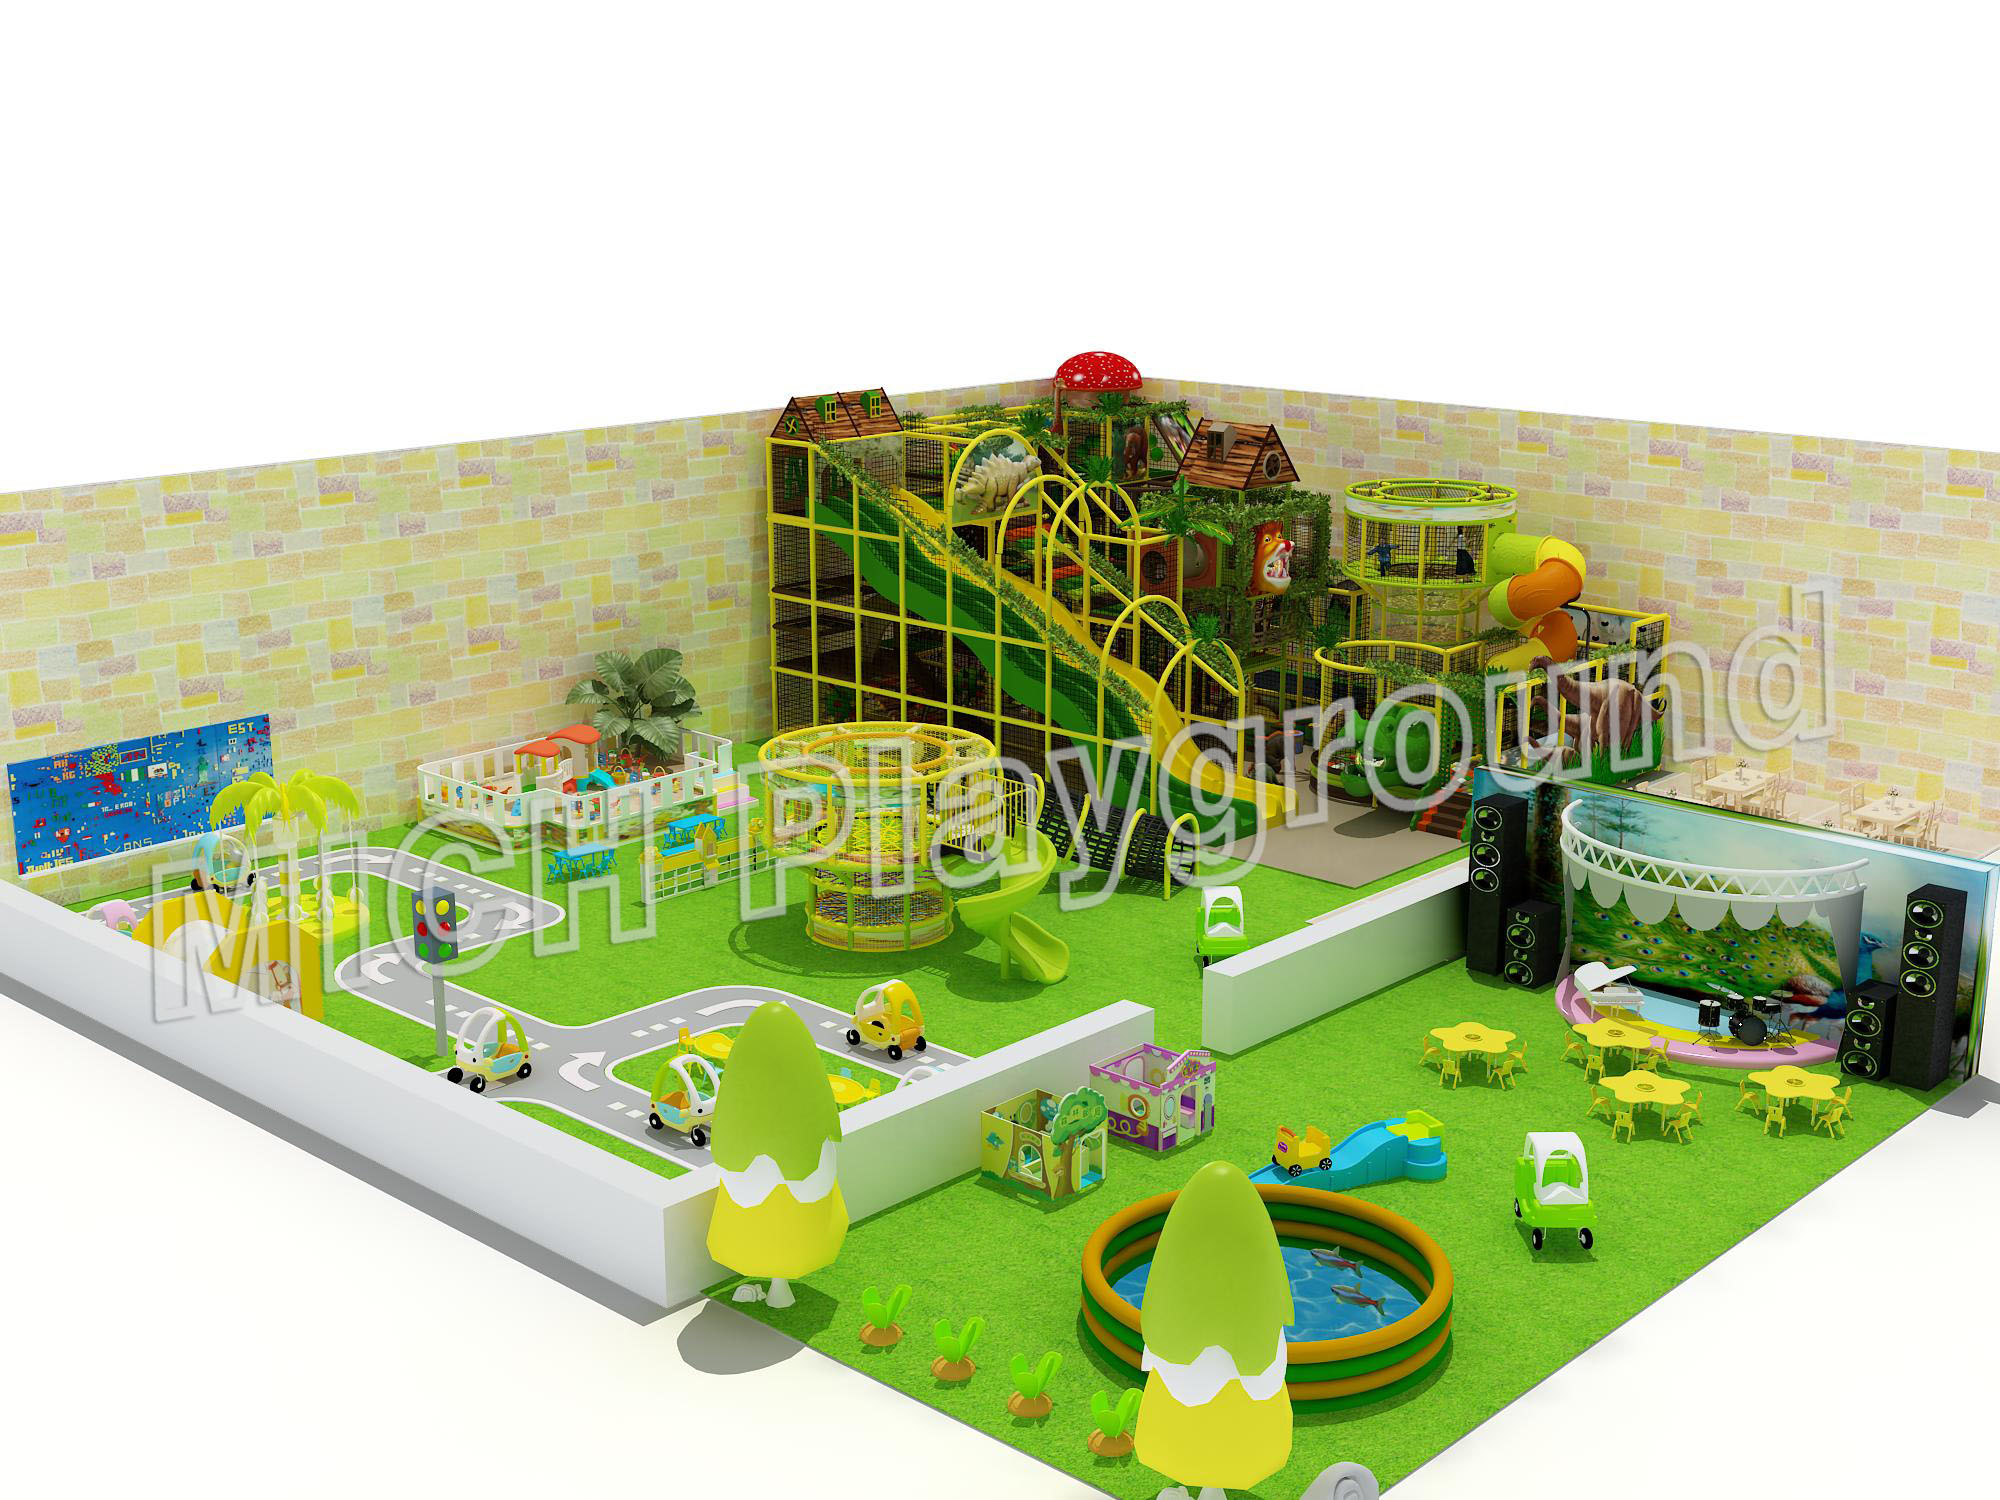 EN1176 Certificated Jungle theme indoor play area